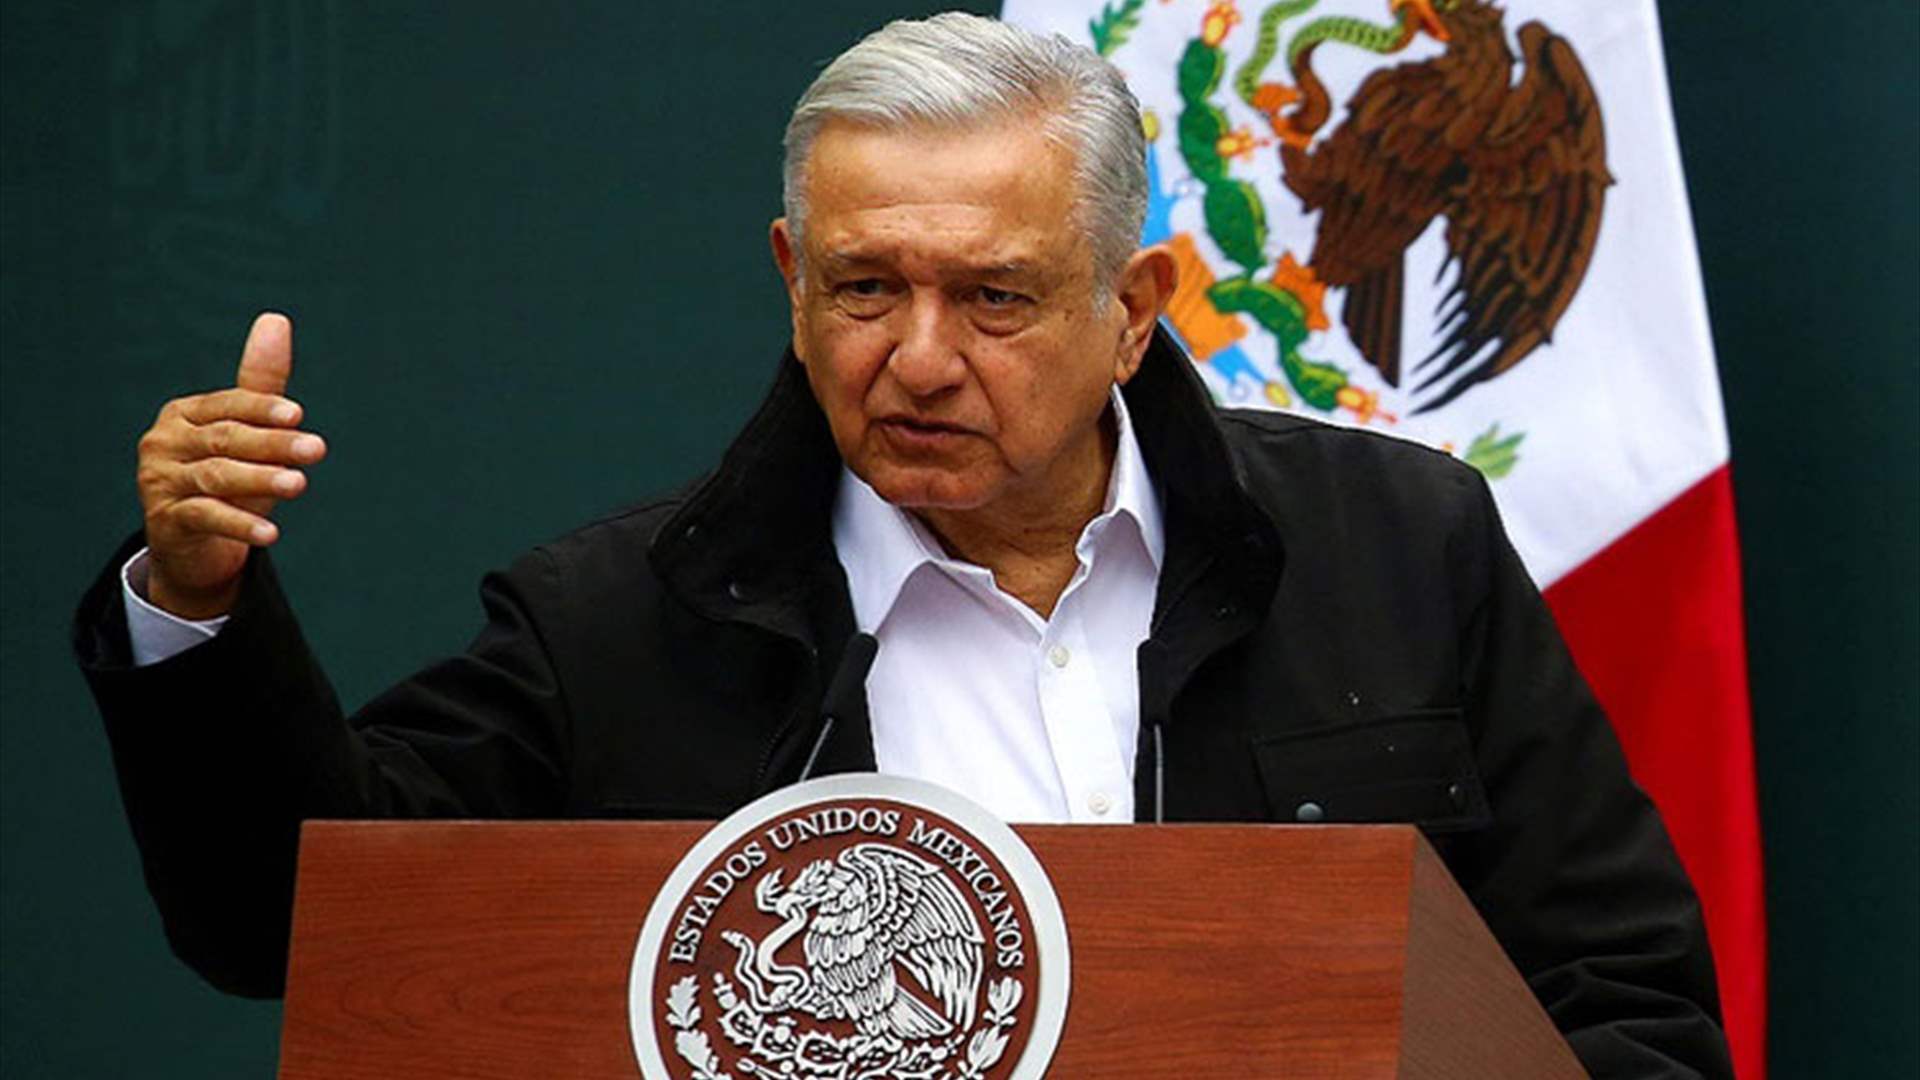 رئيس المكسيك يناشد الأميركيين المتحدّرين من أصول إسبانية عدم التصويت لديسانتيس